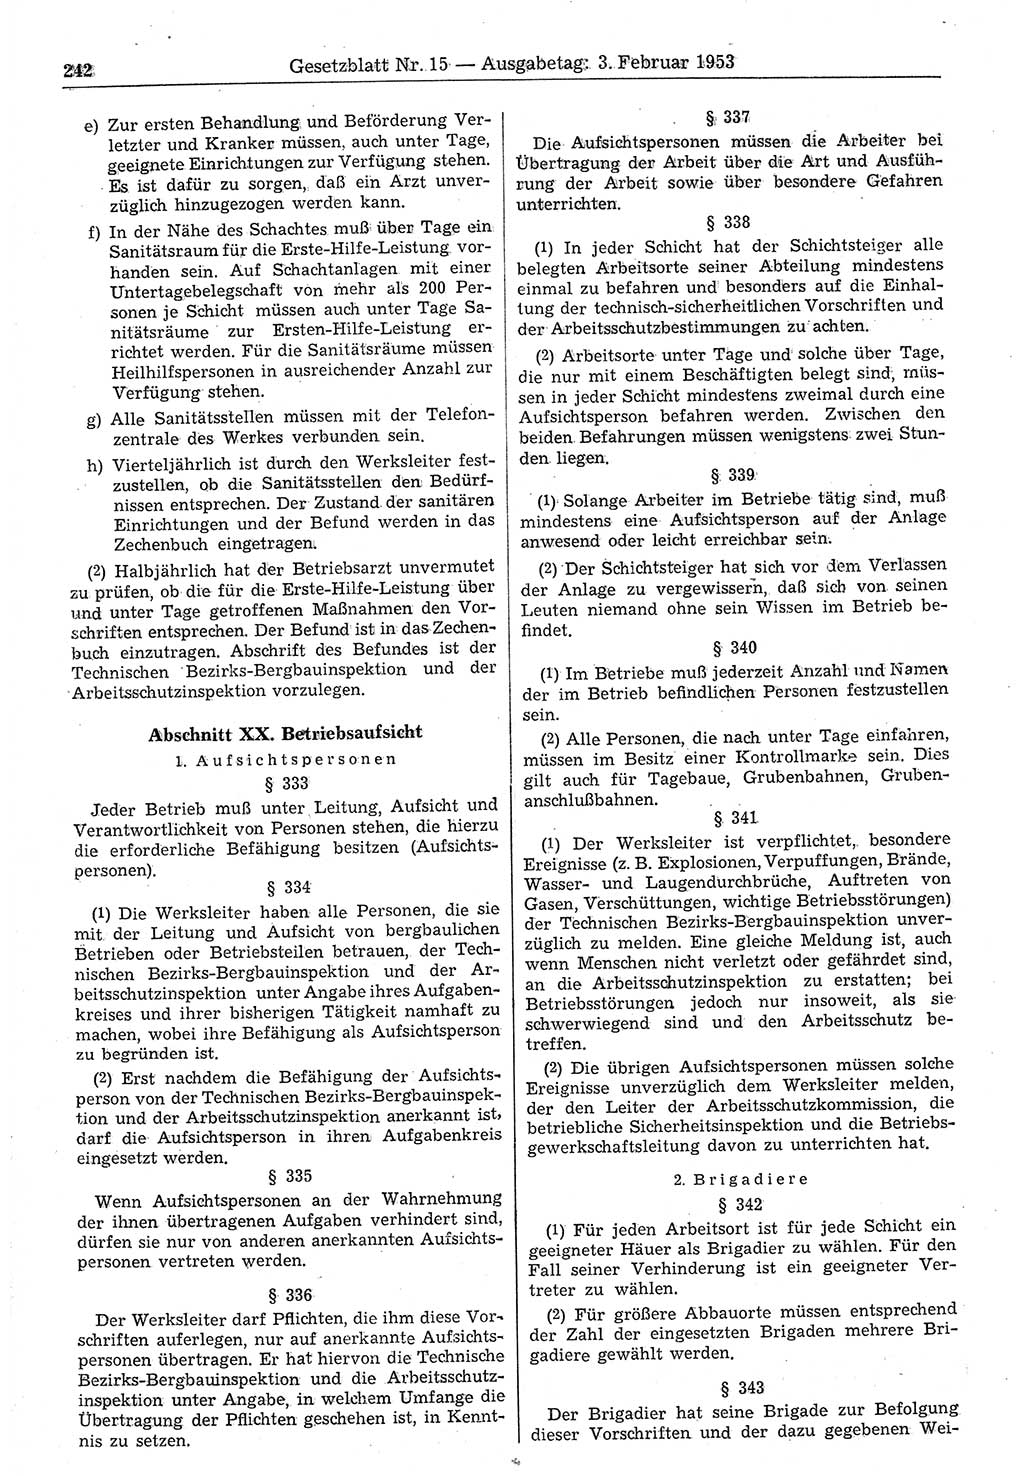 Gesetzblatt (GBl.) der Deutschen Demokratischen Republik (DDR) 1953, Seite 242 (GBl. DDR 1953, S. 242)